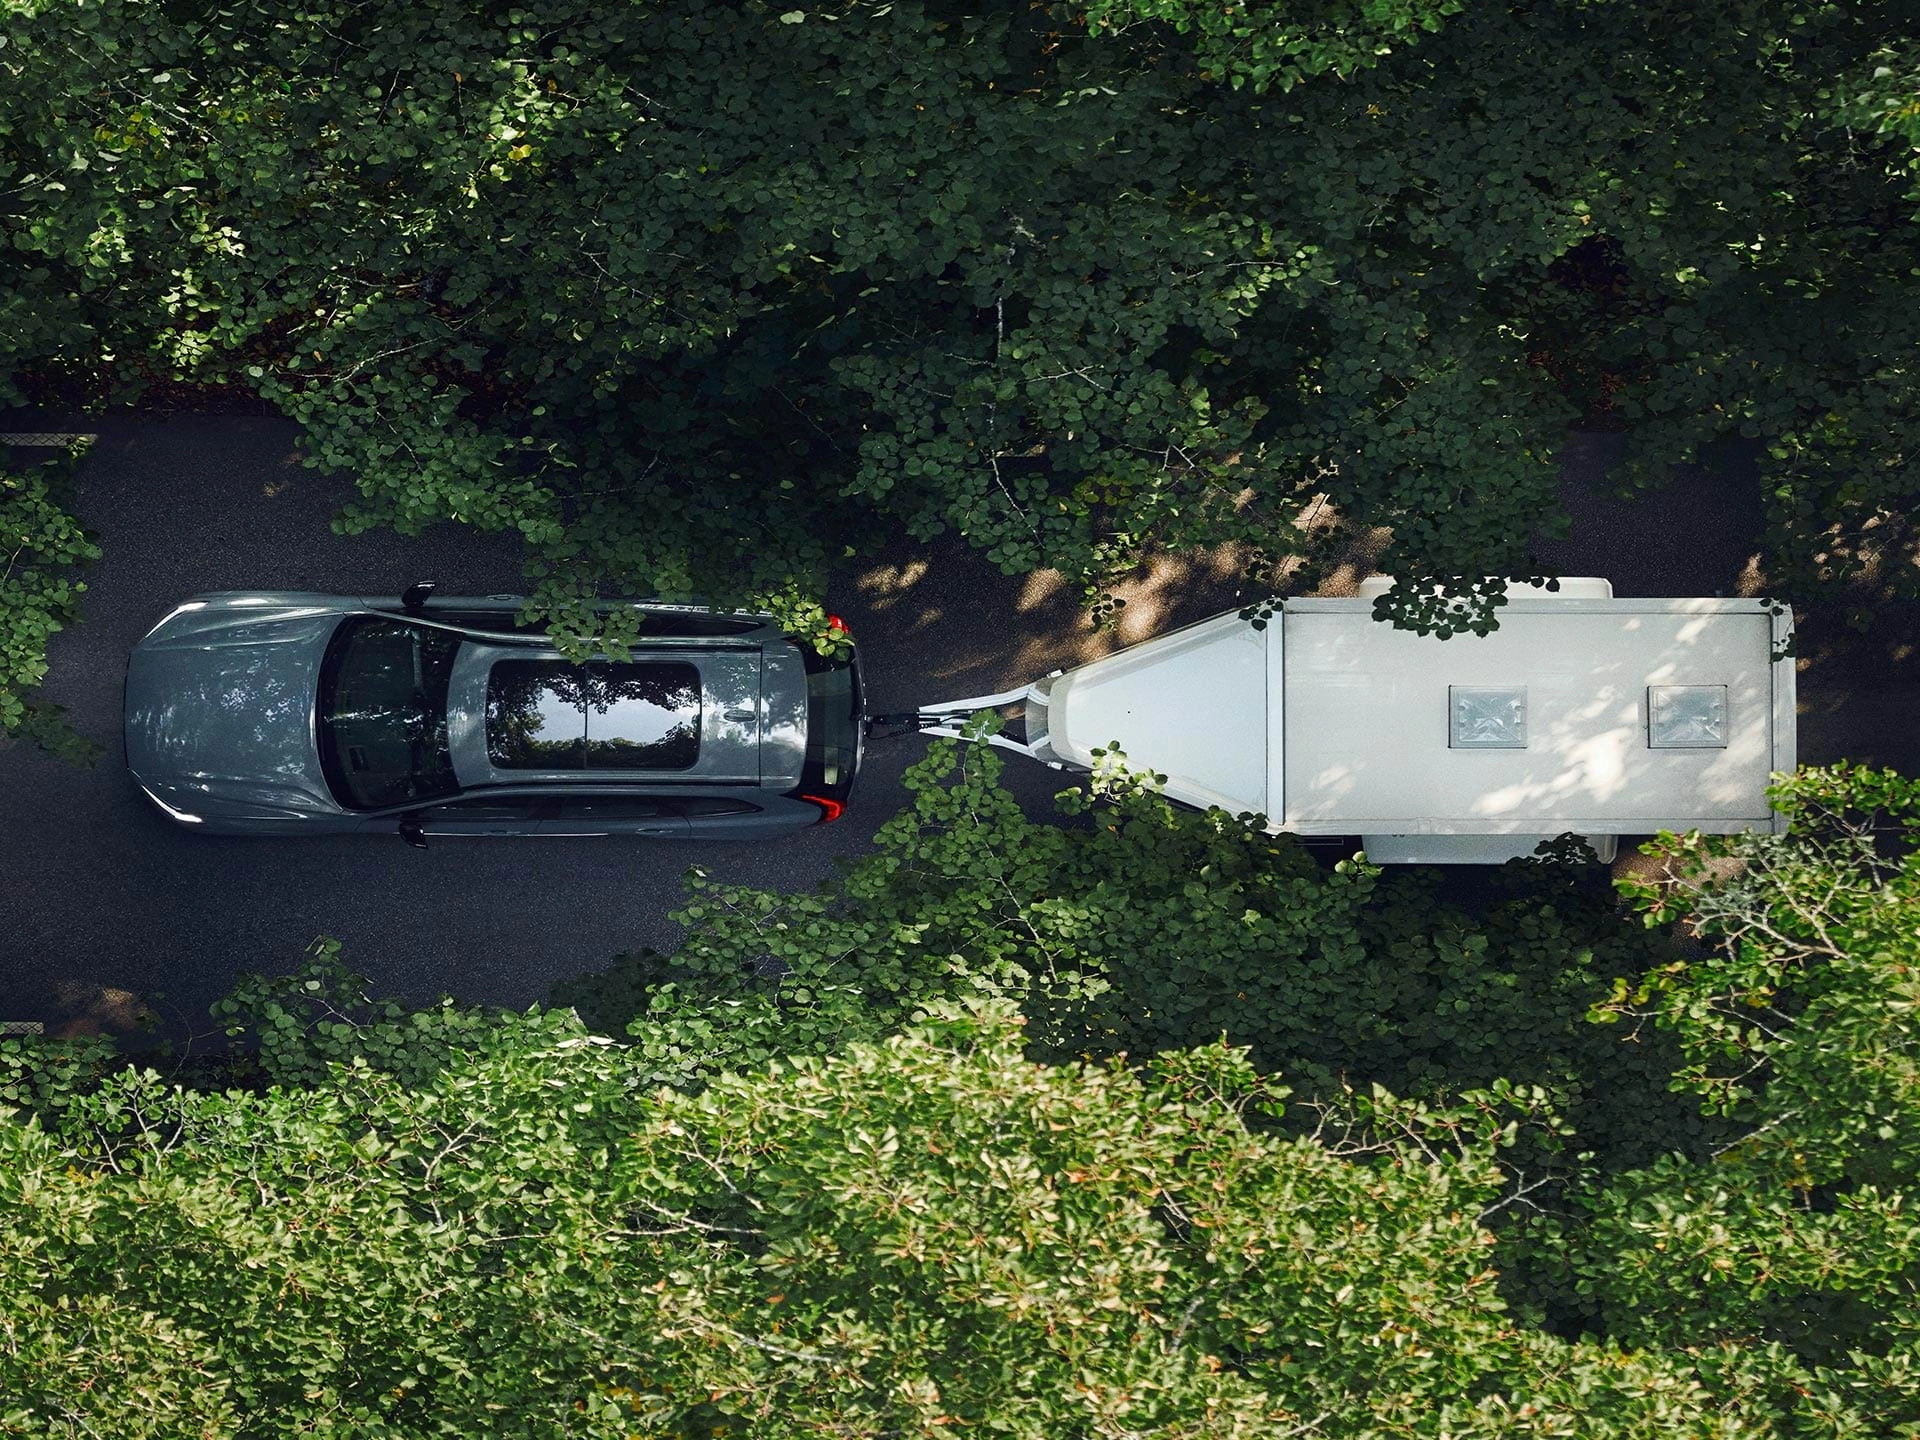 Vista aérea de un Volvo SUV remolcando un remolque blanco por una frondosa carretera en un día soleado.